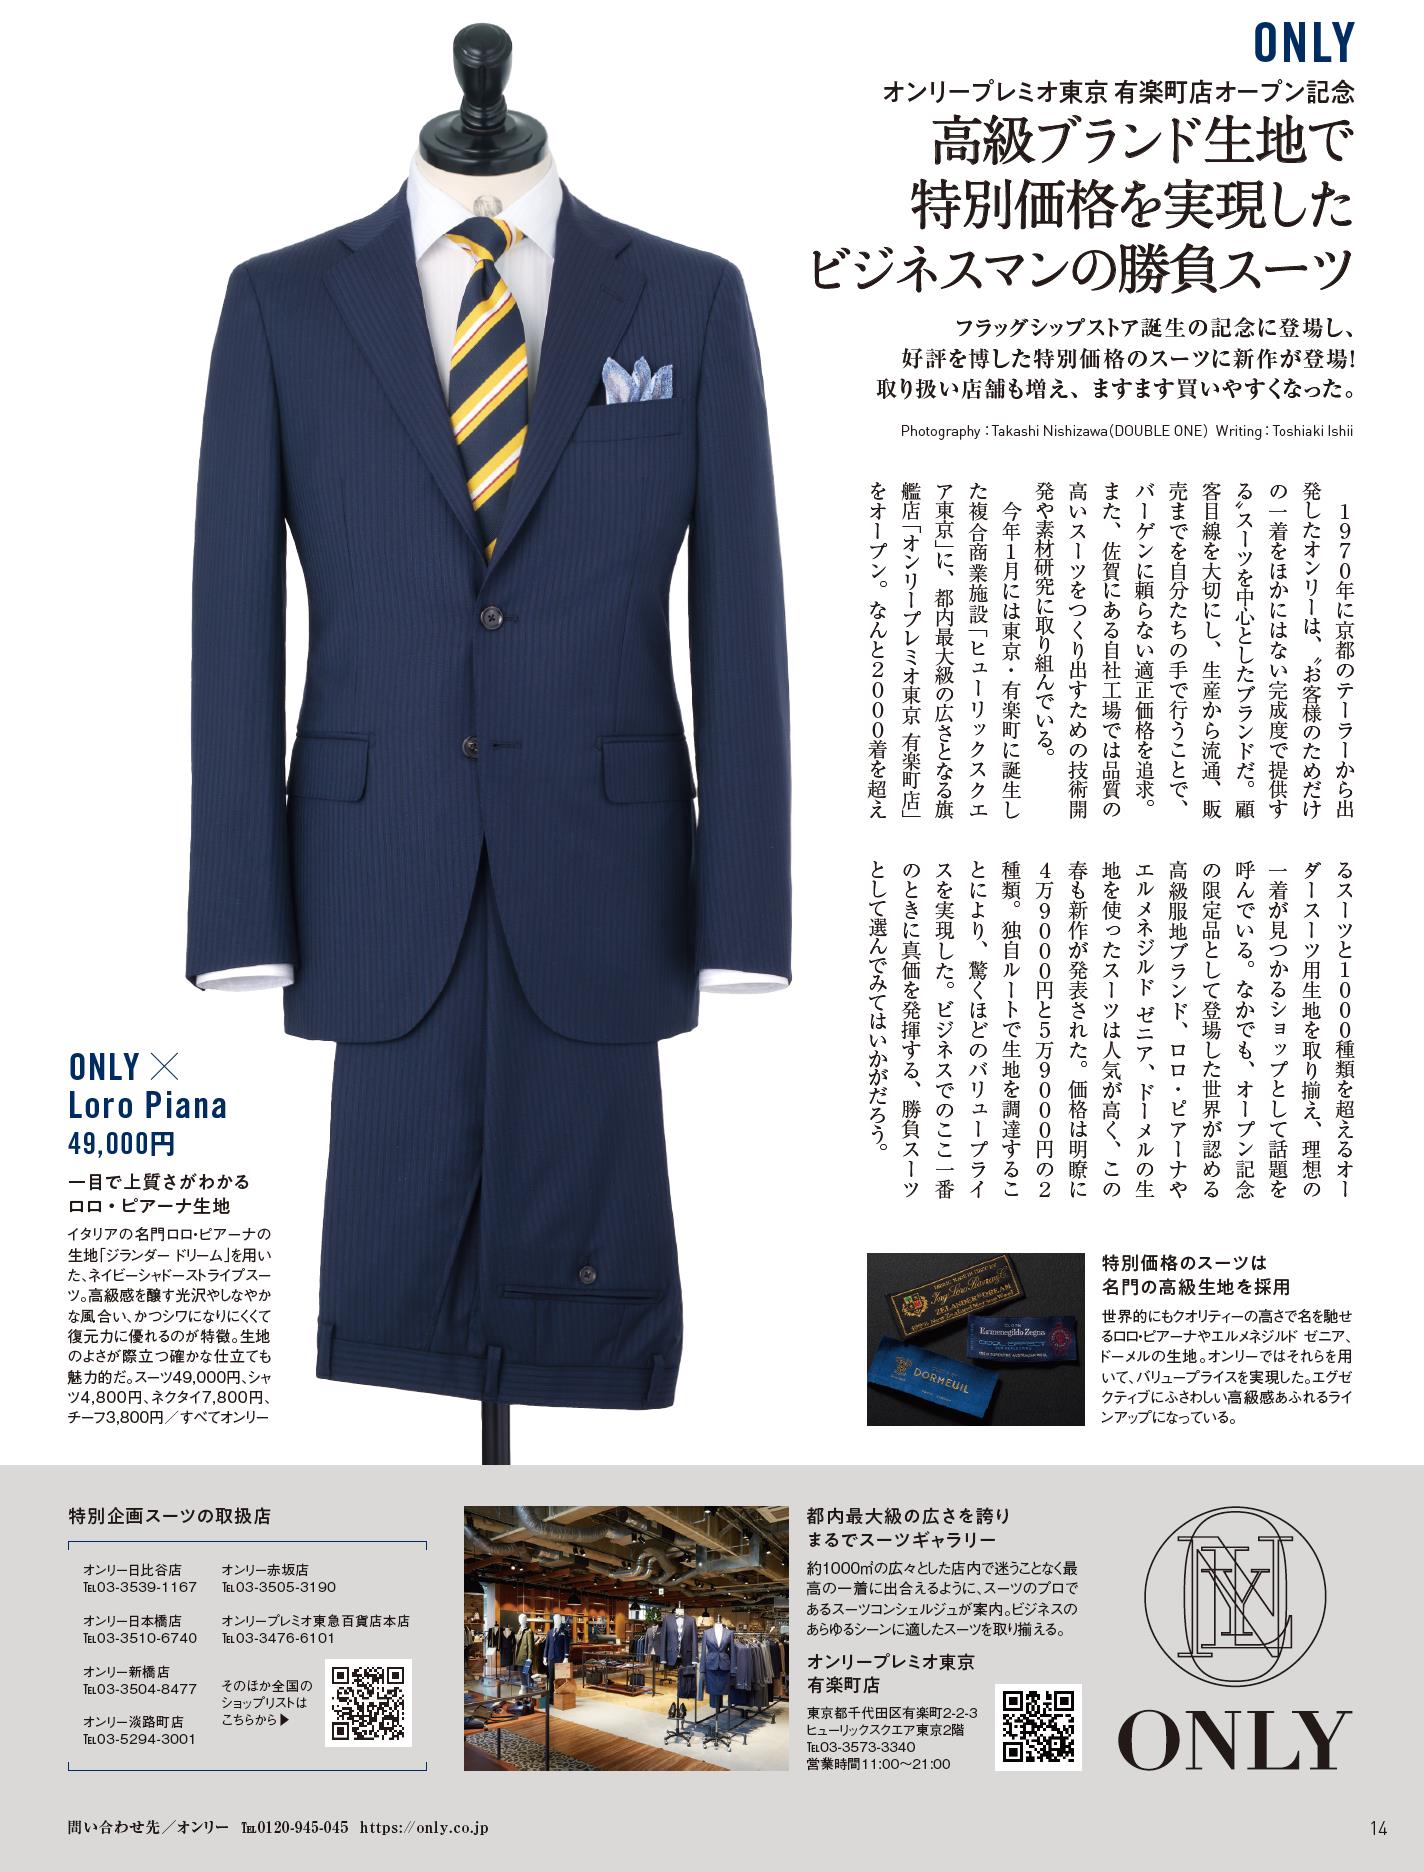 【メディア掲載情報】日経マガジンスタイルに好評を博した特別価格の新作勝負スーツが掲載されました。